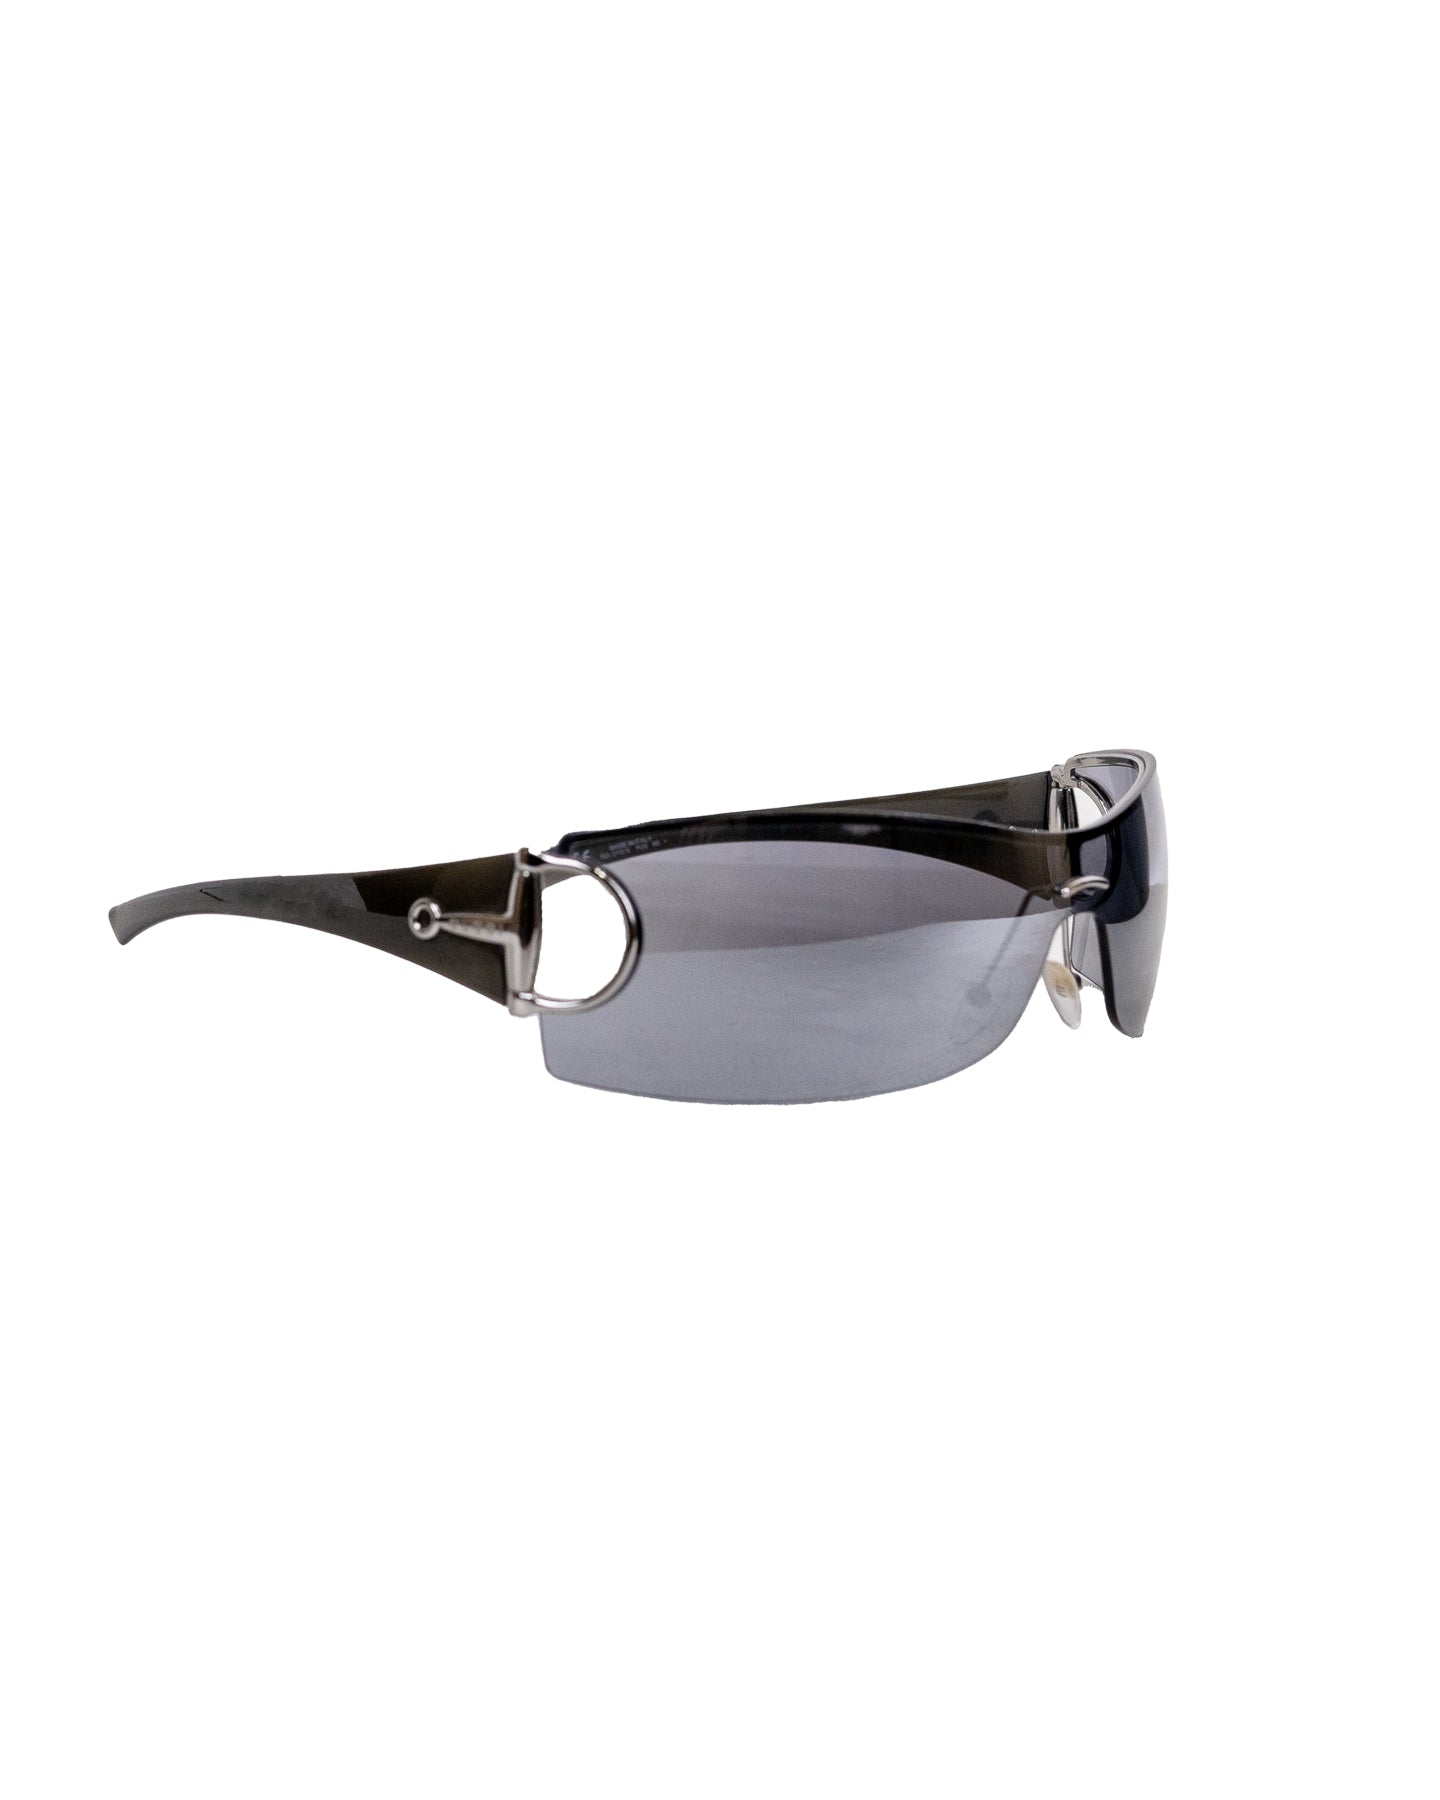 Óculos de sol Gucci Shield com lente espelhada - com caixa original 